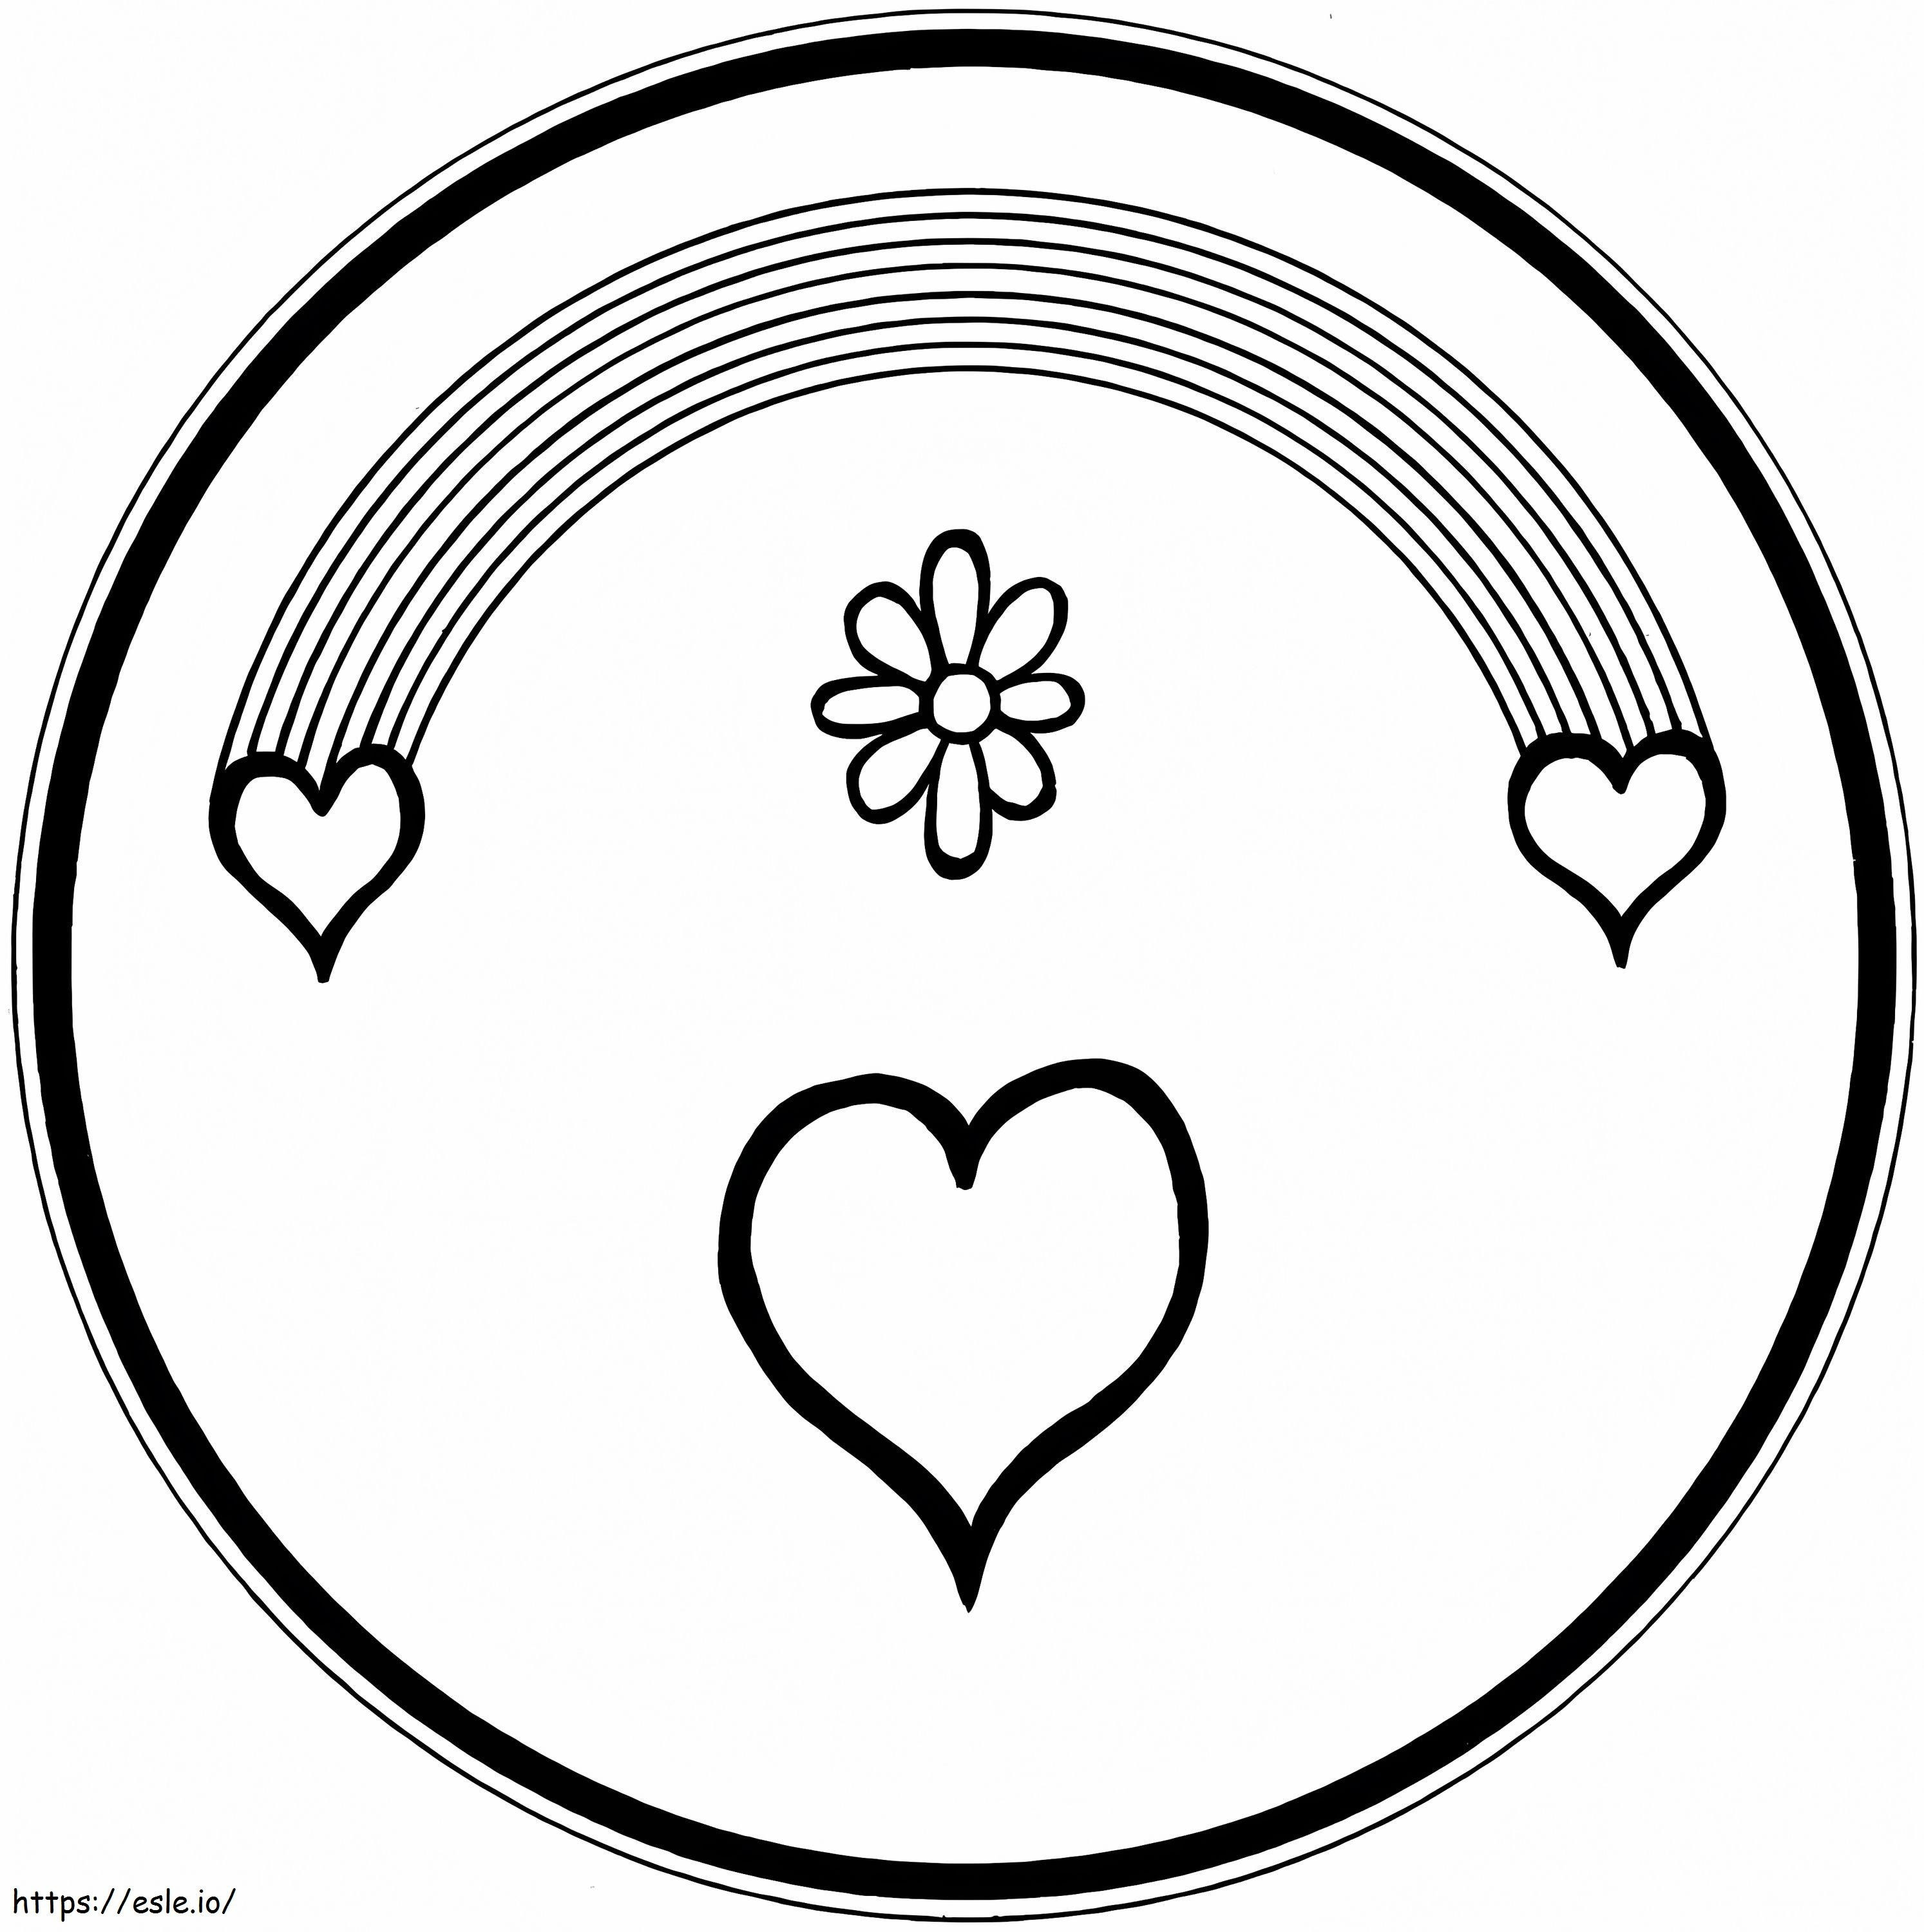 Coloriage Dessin Coeur Mandala à imprimer dessin